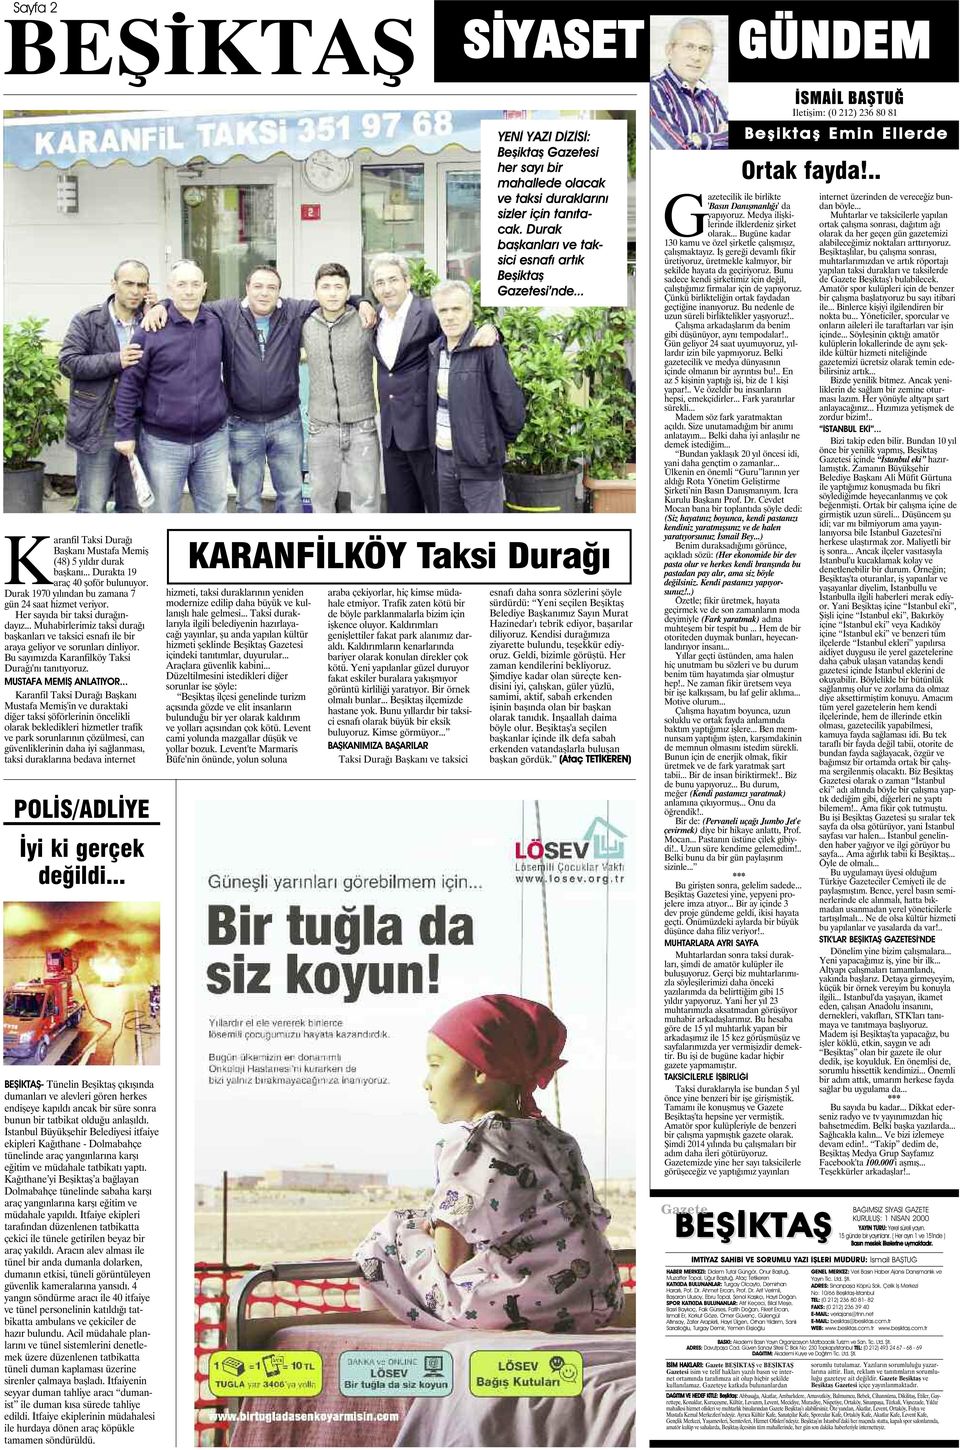 Bu sayımızda Karanfilköy Taksi Durağı'nı tanıtıyoruz. MUSTAFA MEMİŞ ANLATIYOR.